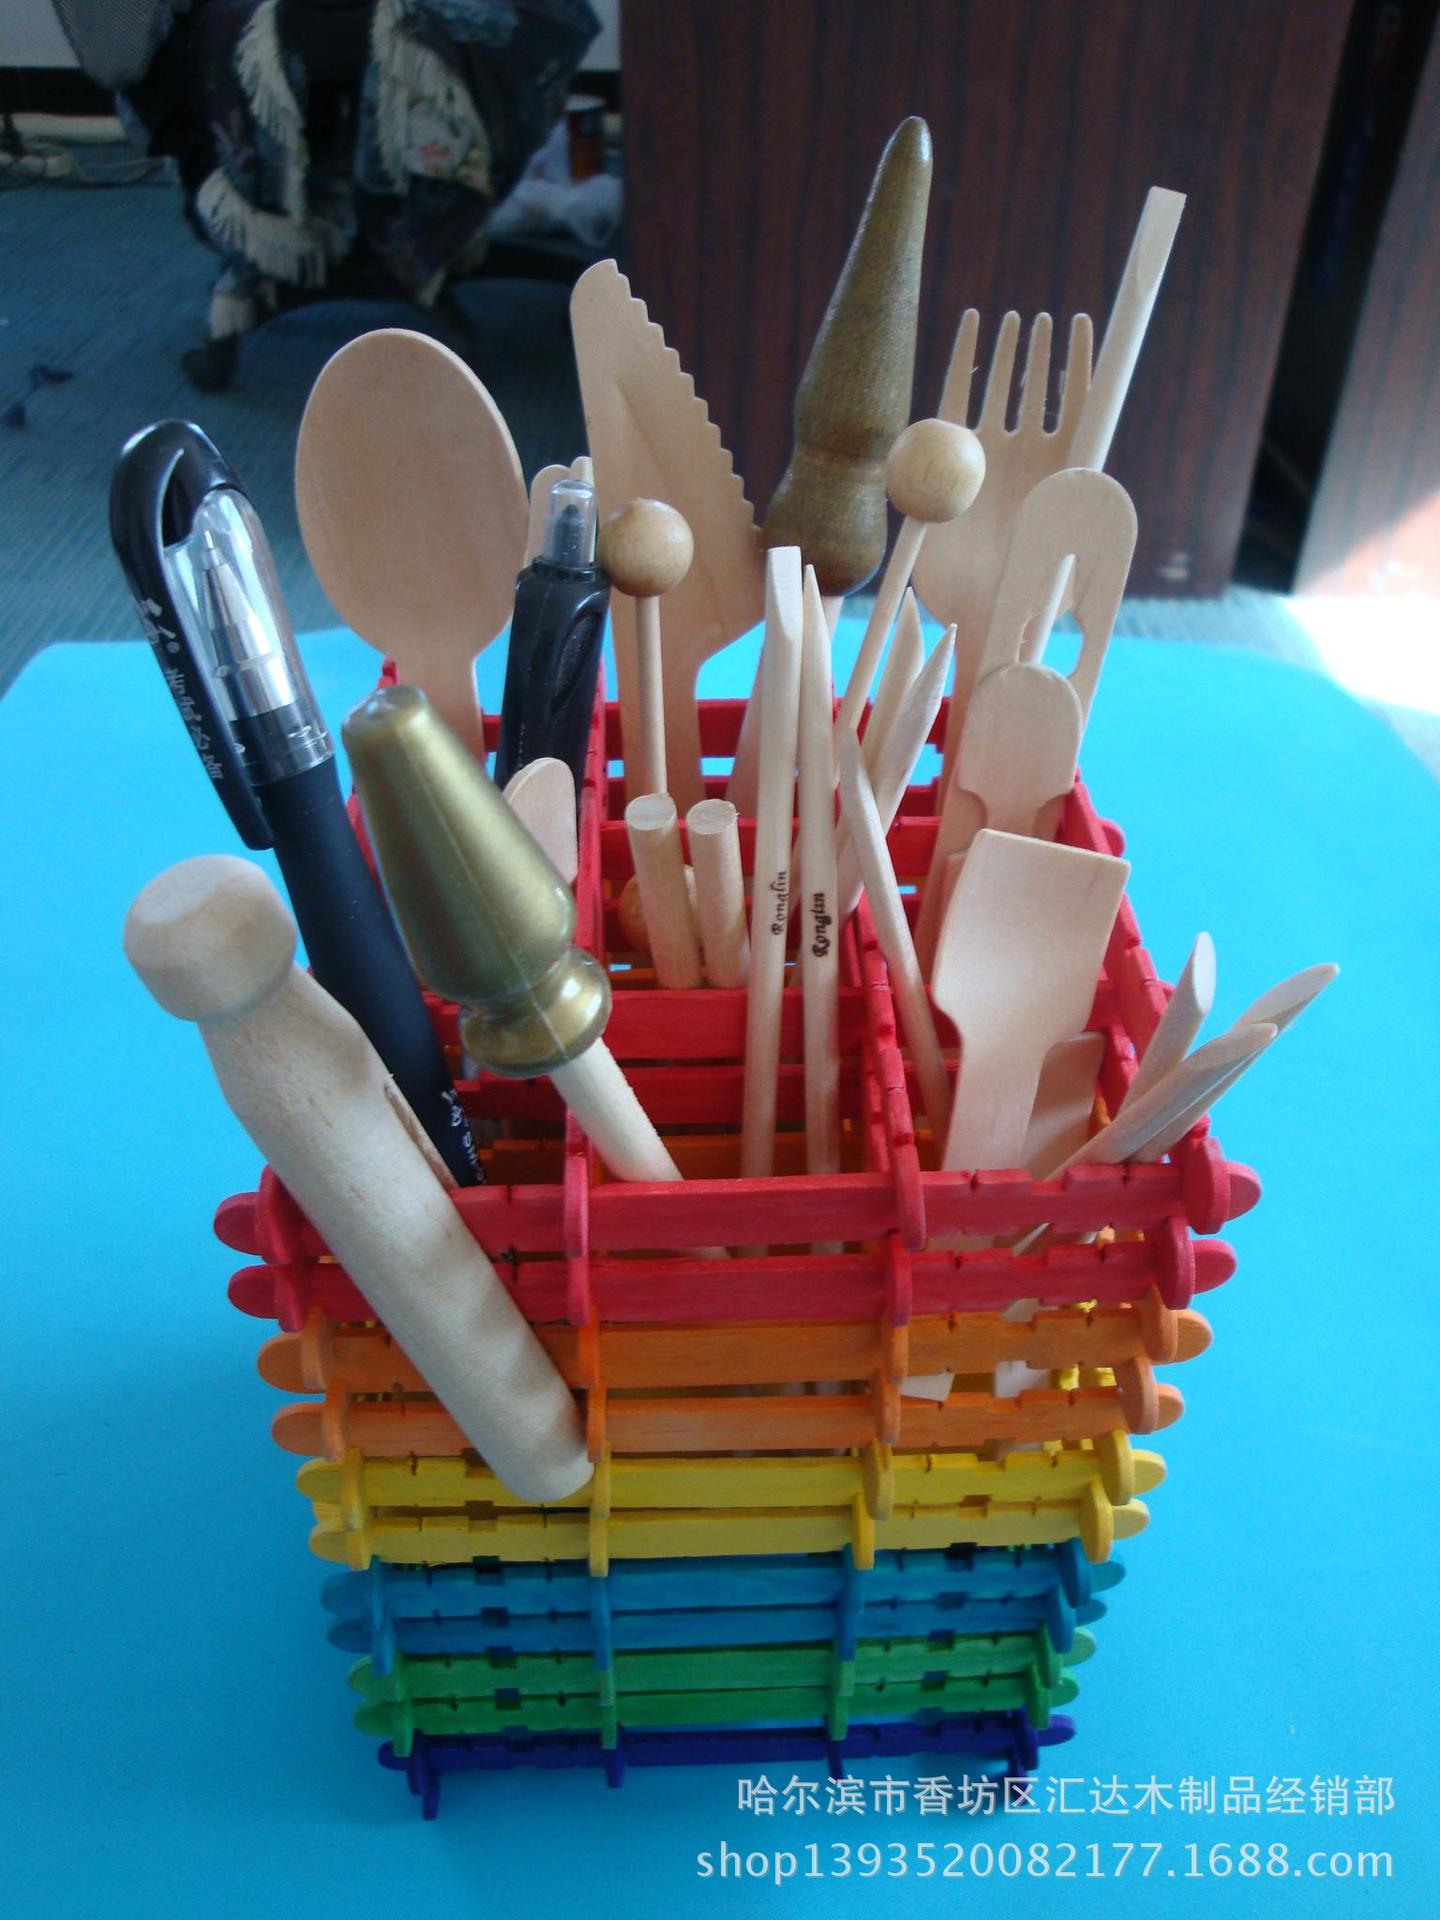 供应锯齿棒 木质锯齿棒 彩色锯齿棒  益智玩具锯齿棒